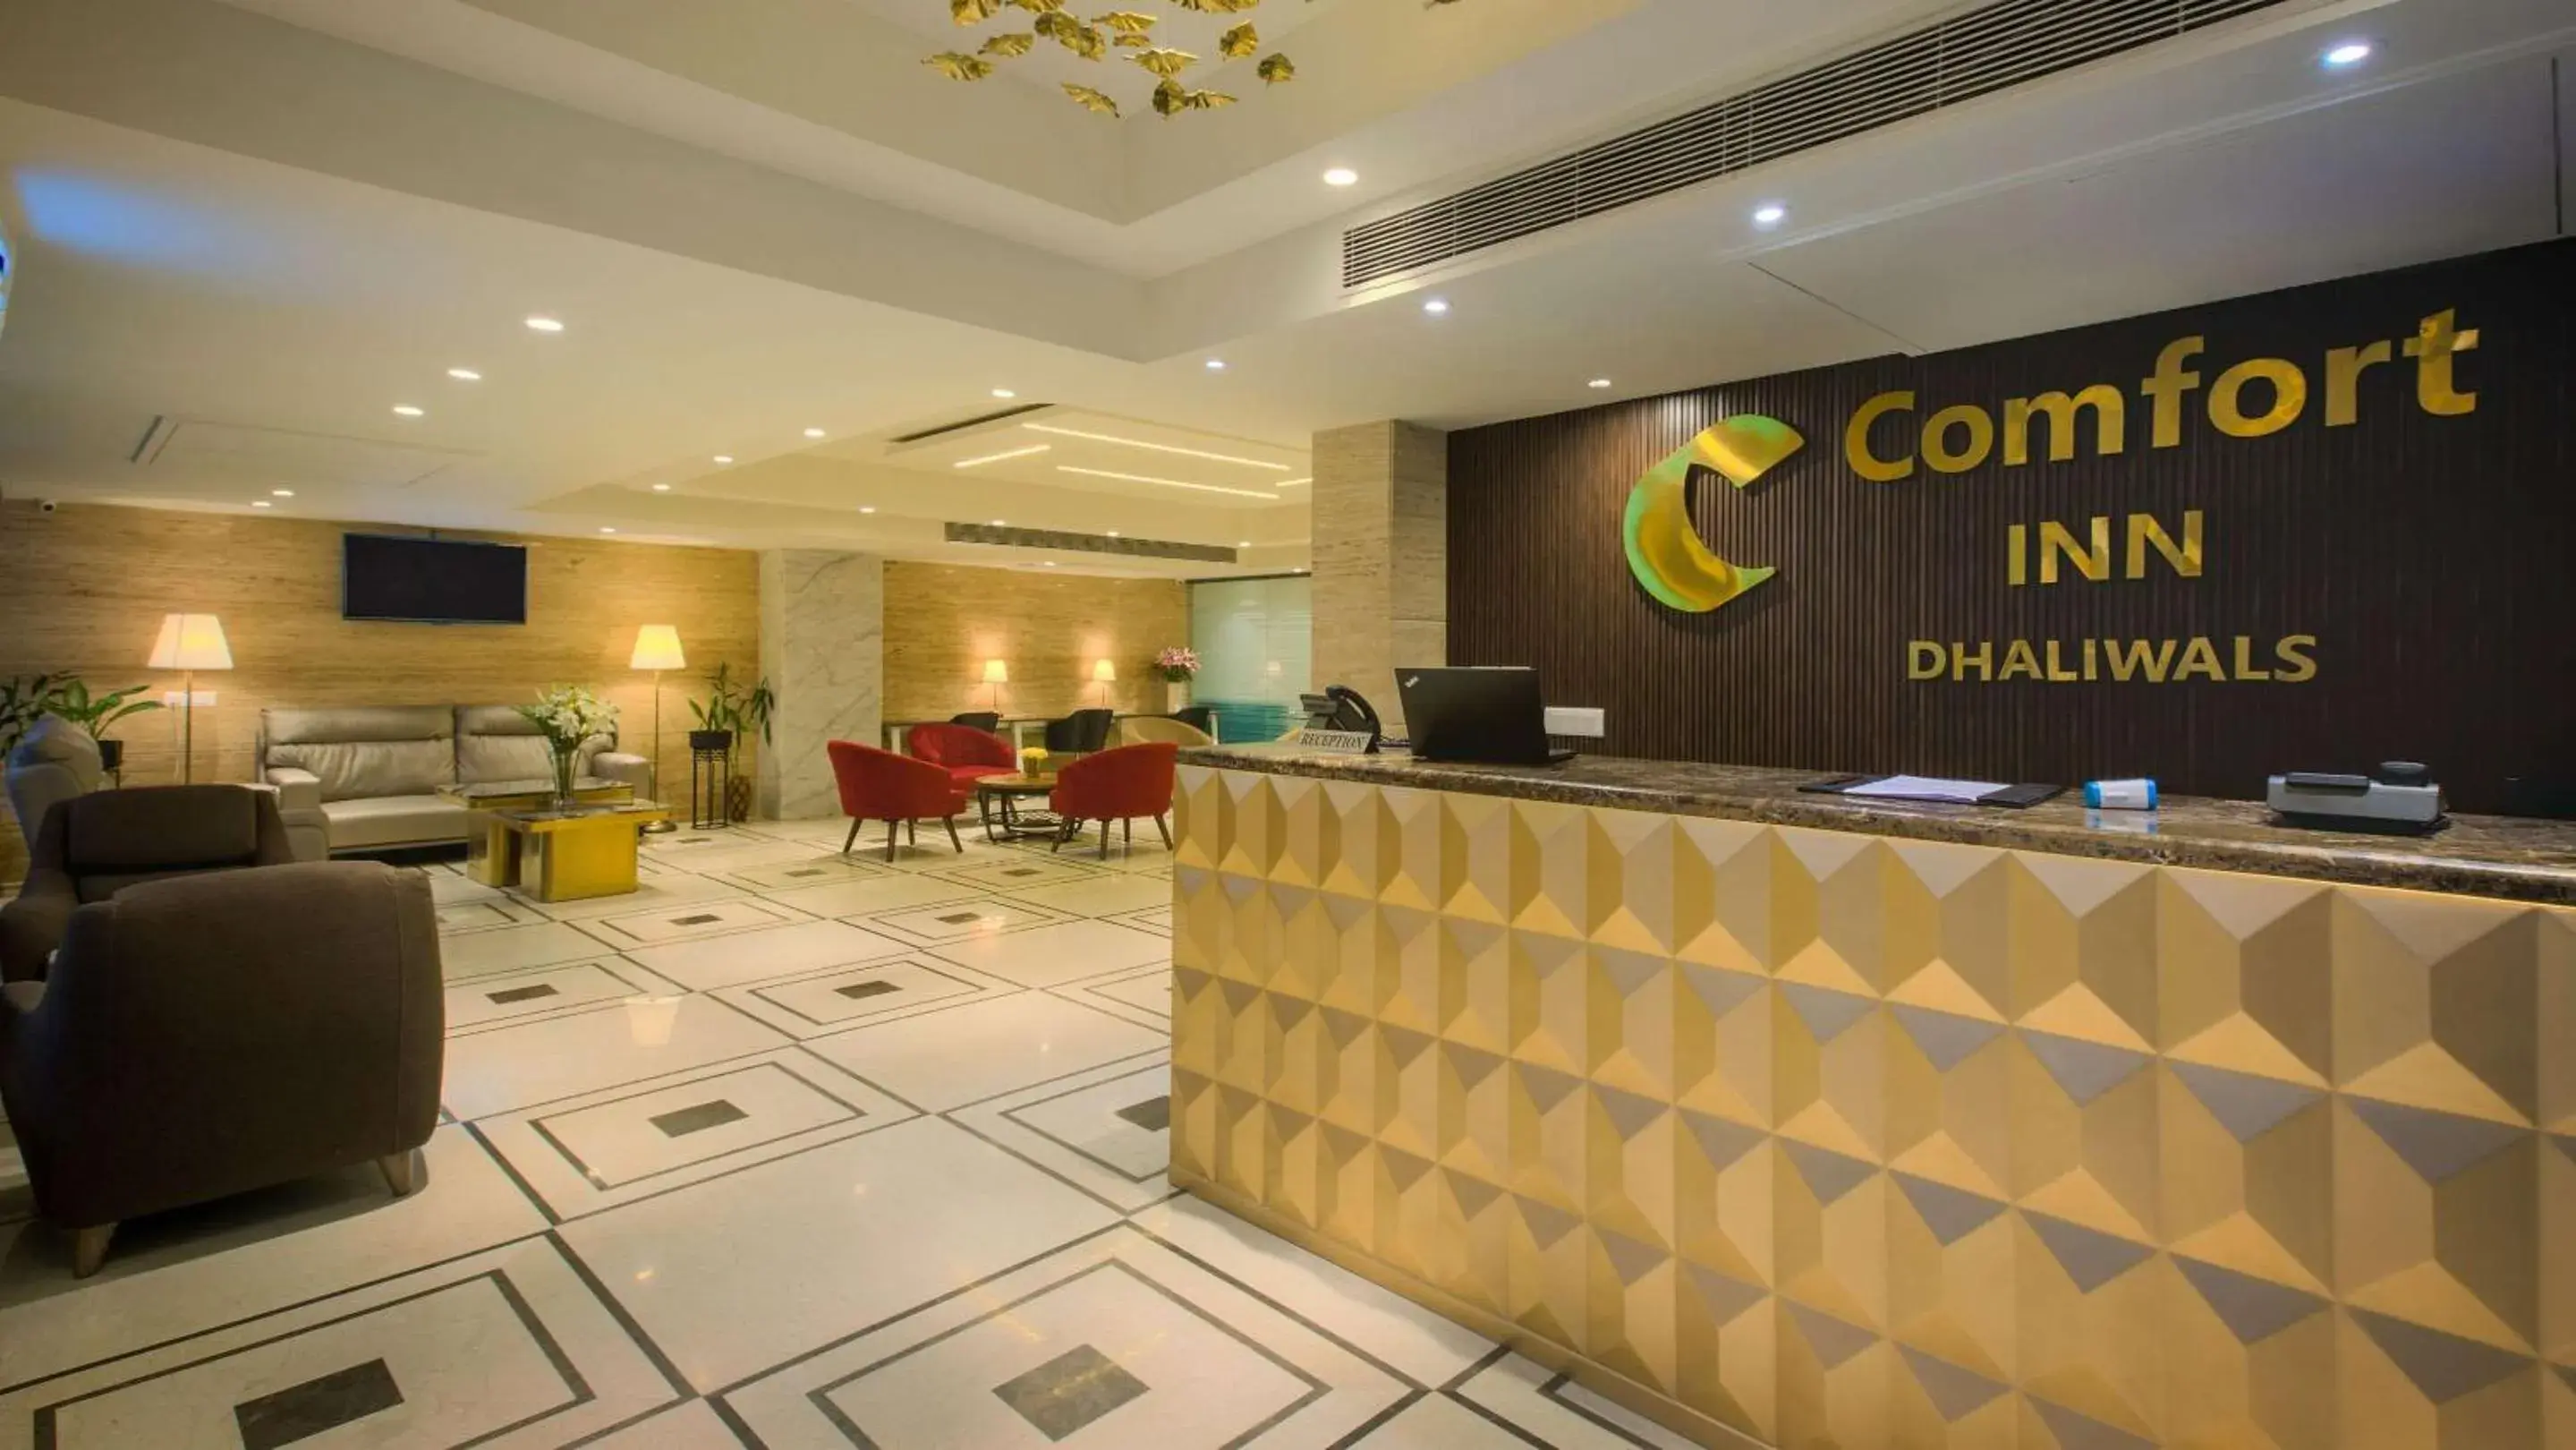 Lobby or reception, Lobby/Reception in Comfort Inn Dhaliwals, Gurgaon